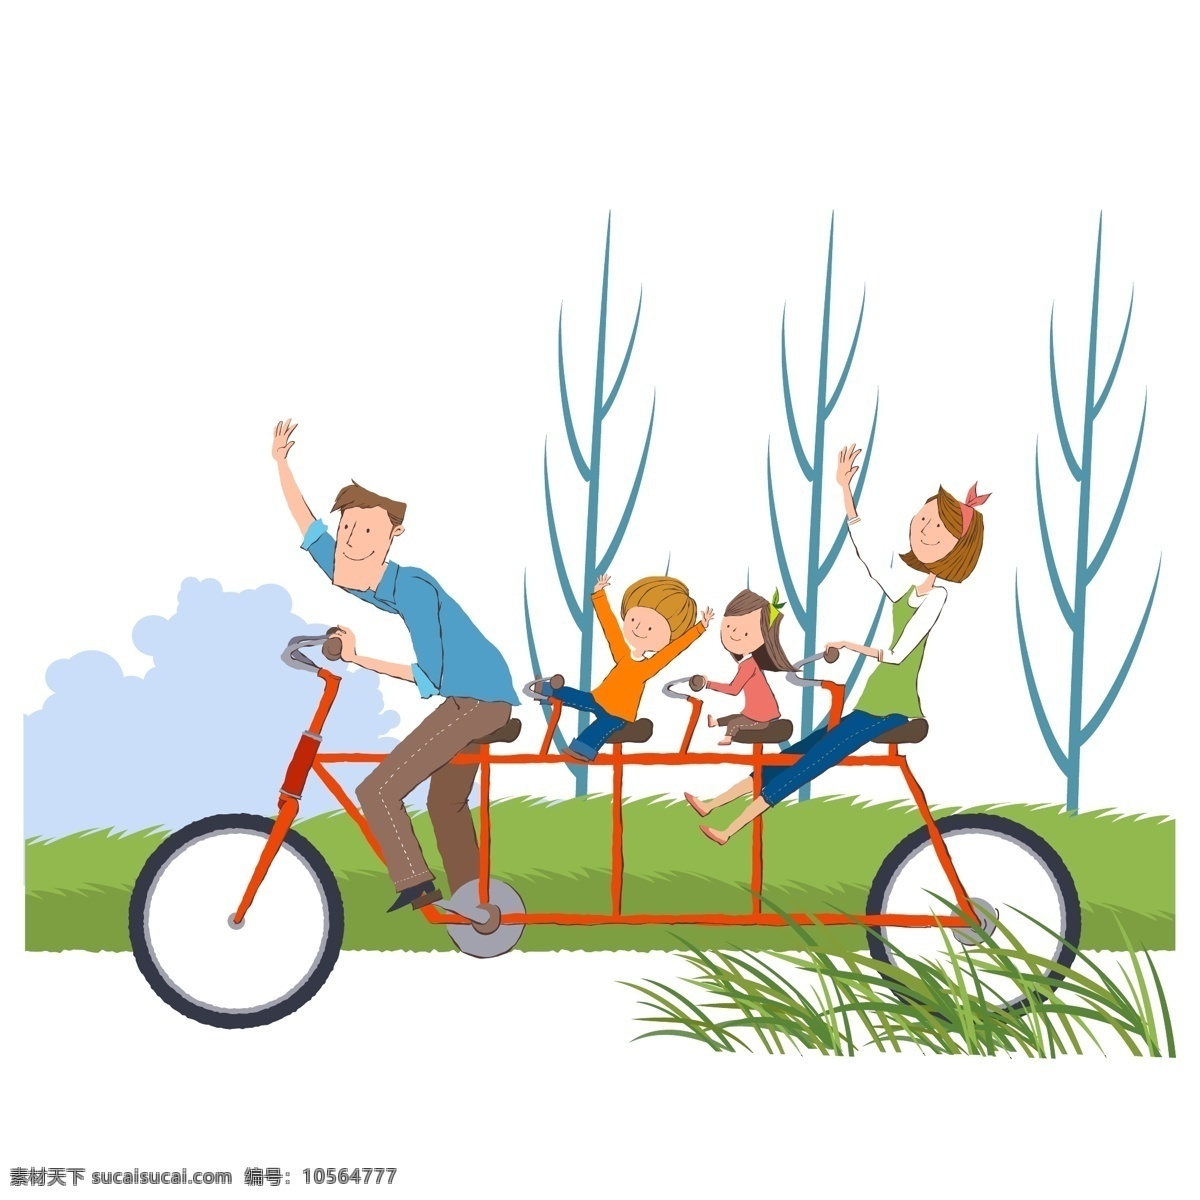 骑 自行车 一家人 开心 运动 双人自行车 矢量图 矢量人物